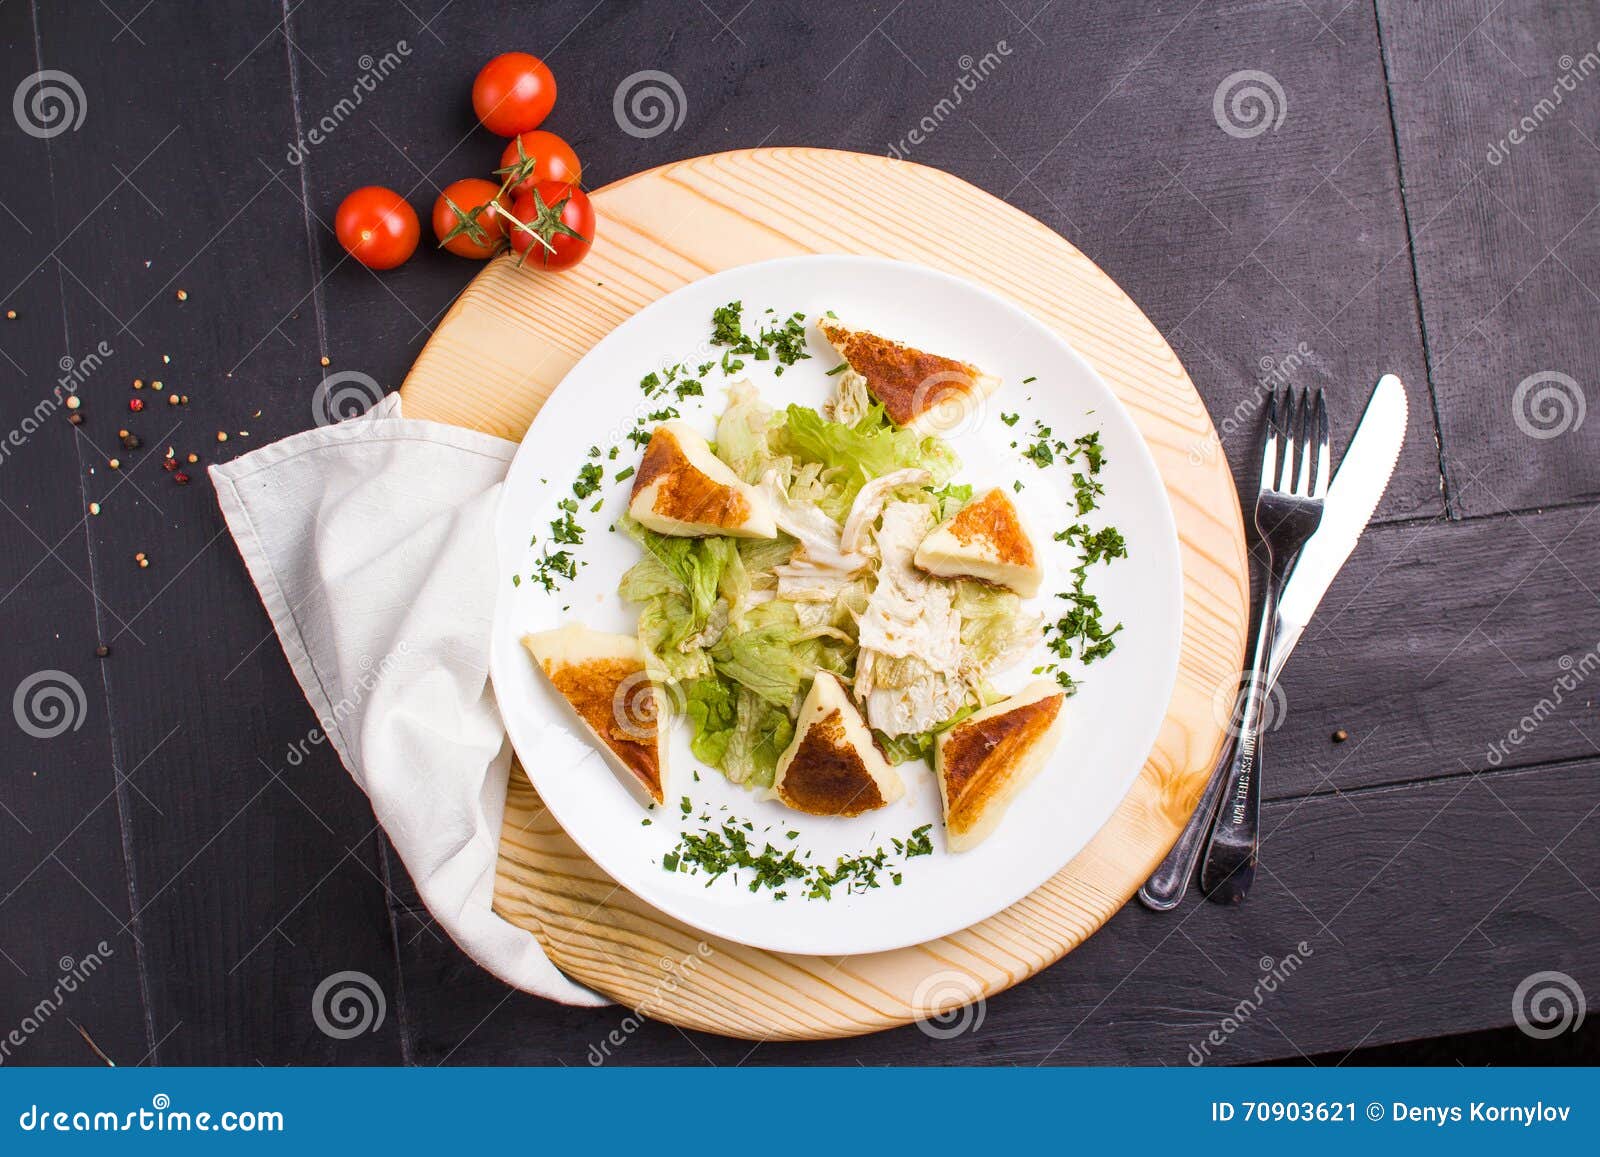 Vegeteriansalade met gebraden kaas. Concept: gezond voedsel De eigengemaakte Vegeterian-salade met gebraden kaas op witte plaat met ingrediënten paneert rond en bestek